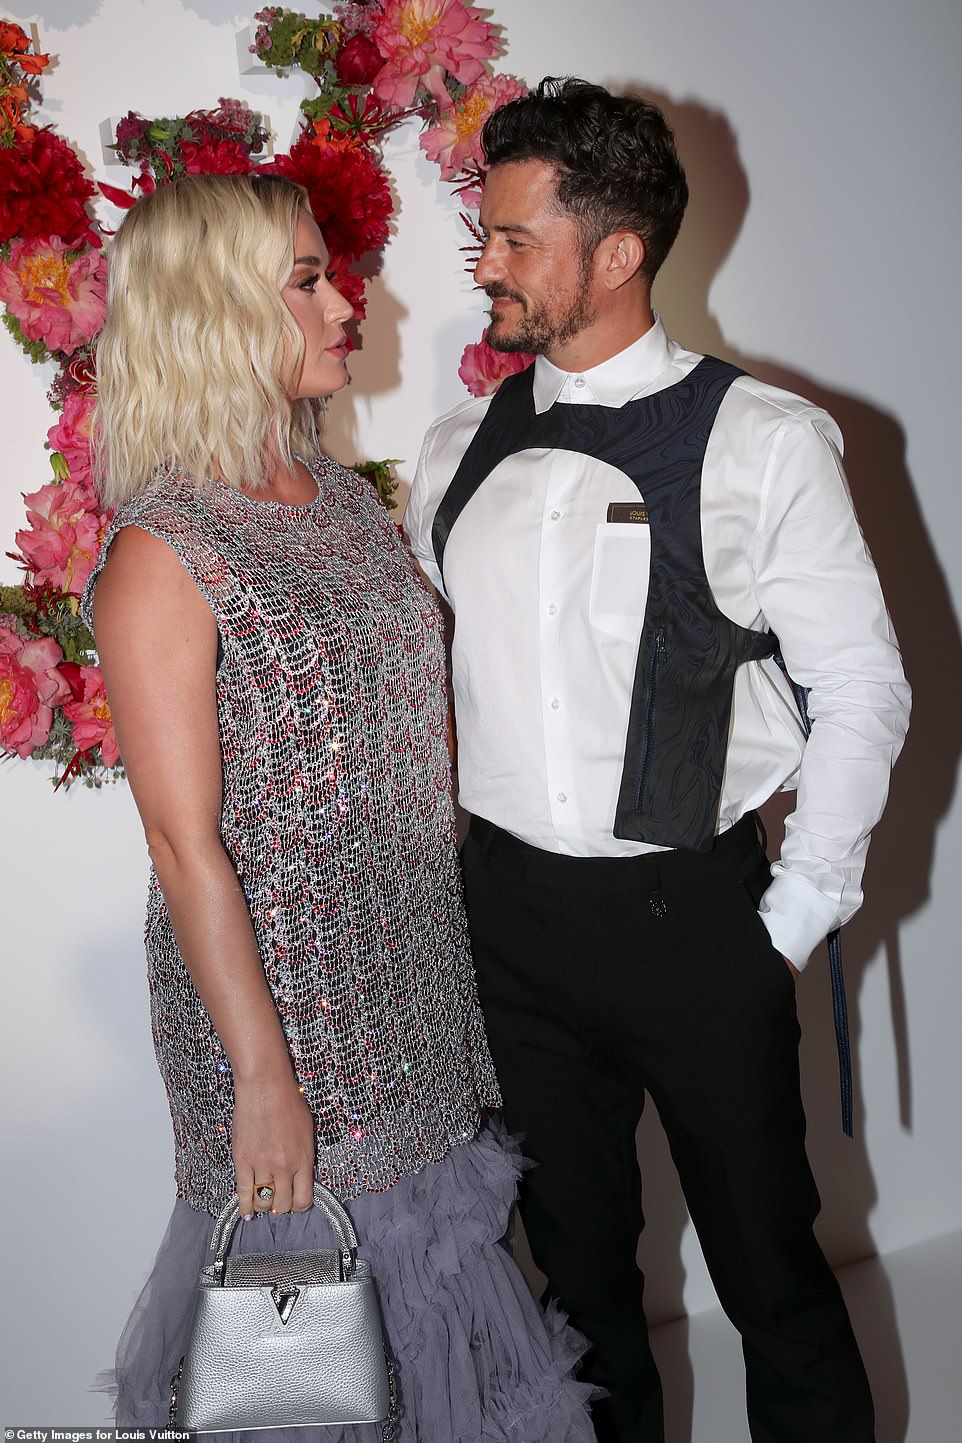 Dàn sao đổ bộ tiệc khủng của Louis Vuitton: Katy Perry - Orlando và vợ chồng Joe Jonas bị dìm toàn tập, Bella Hadid át cả dàn mẫu - Ảnh 4.